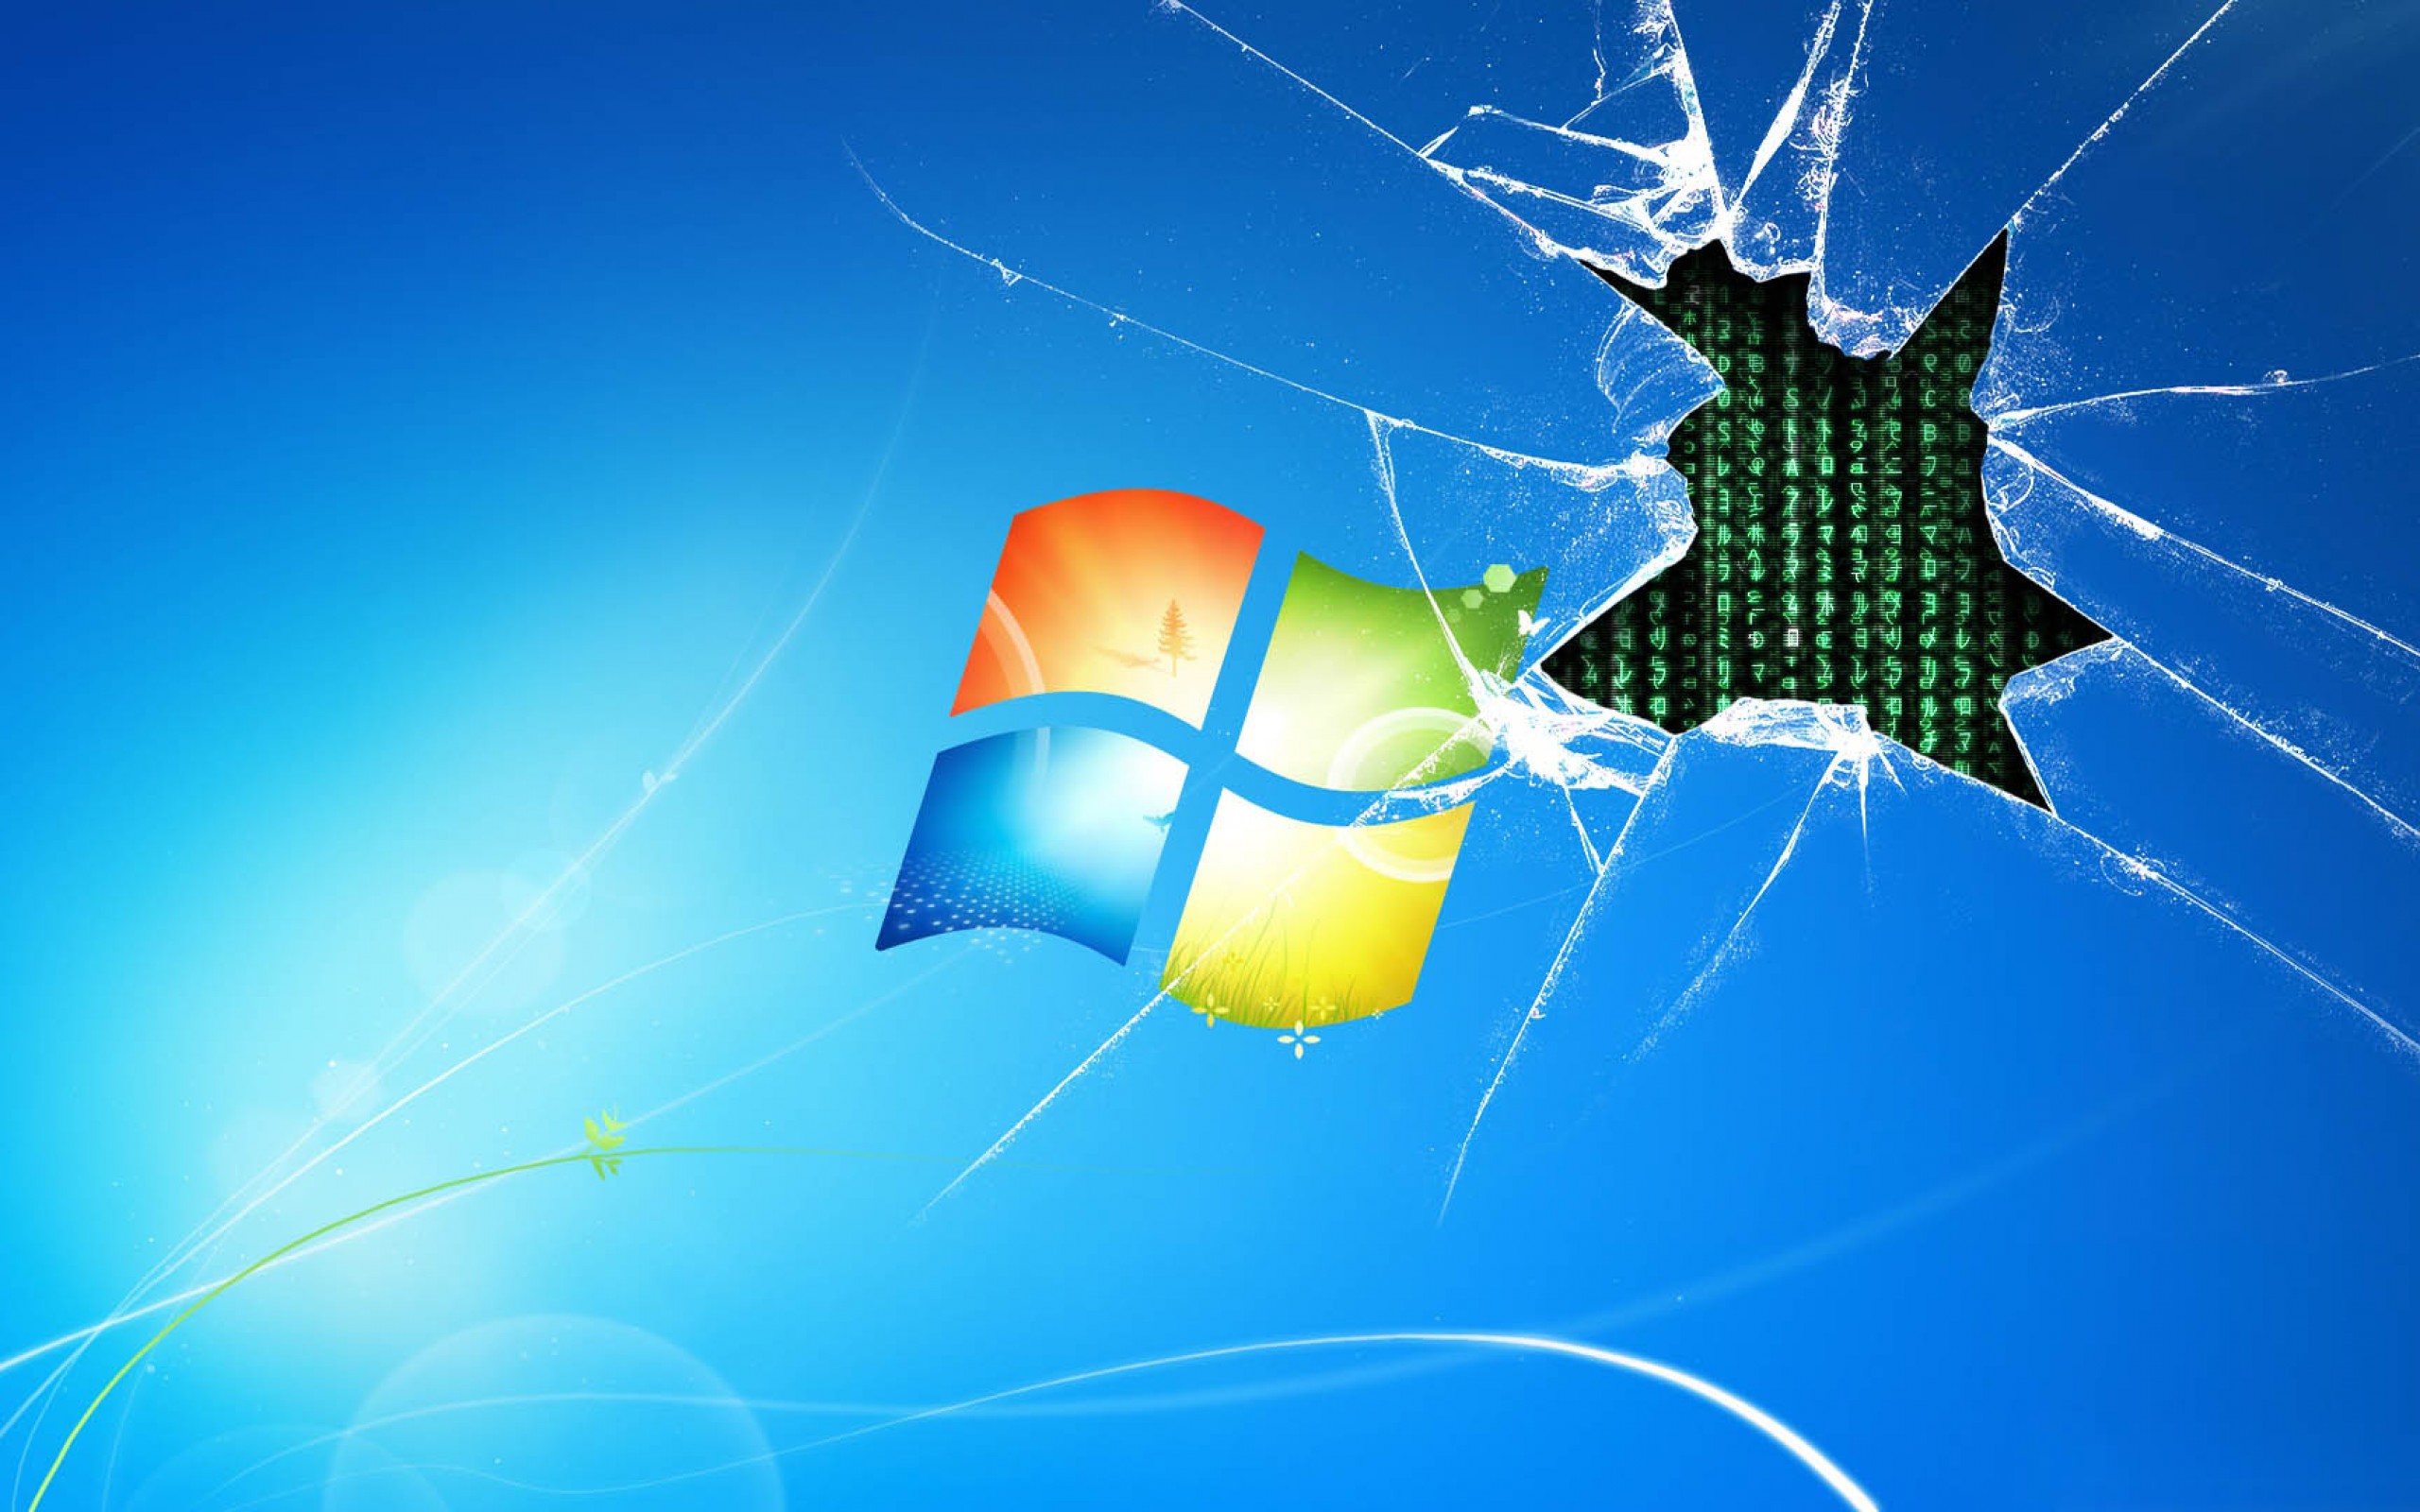 Broken Windows 7 Wallpaper - WallpaperSafari